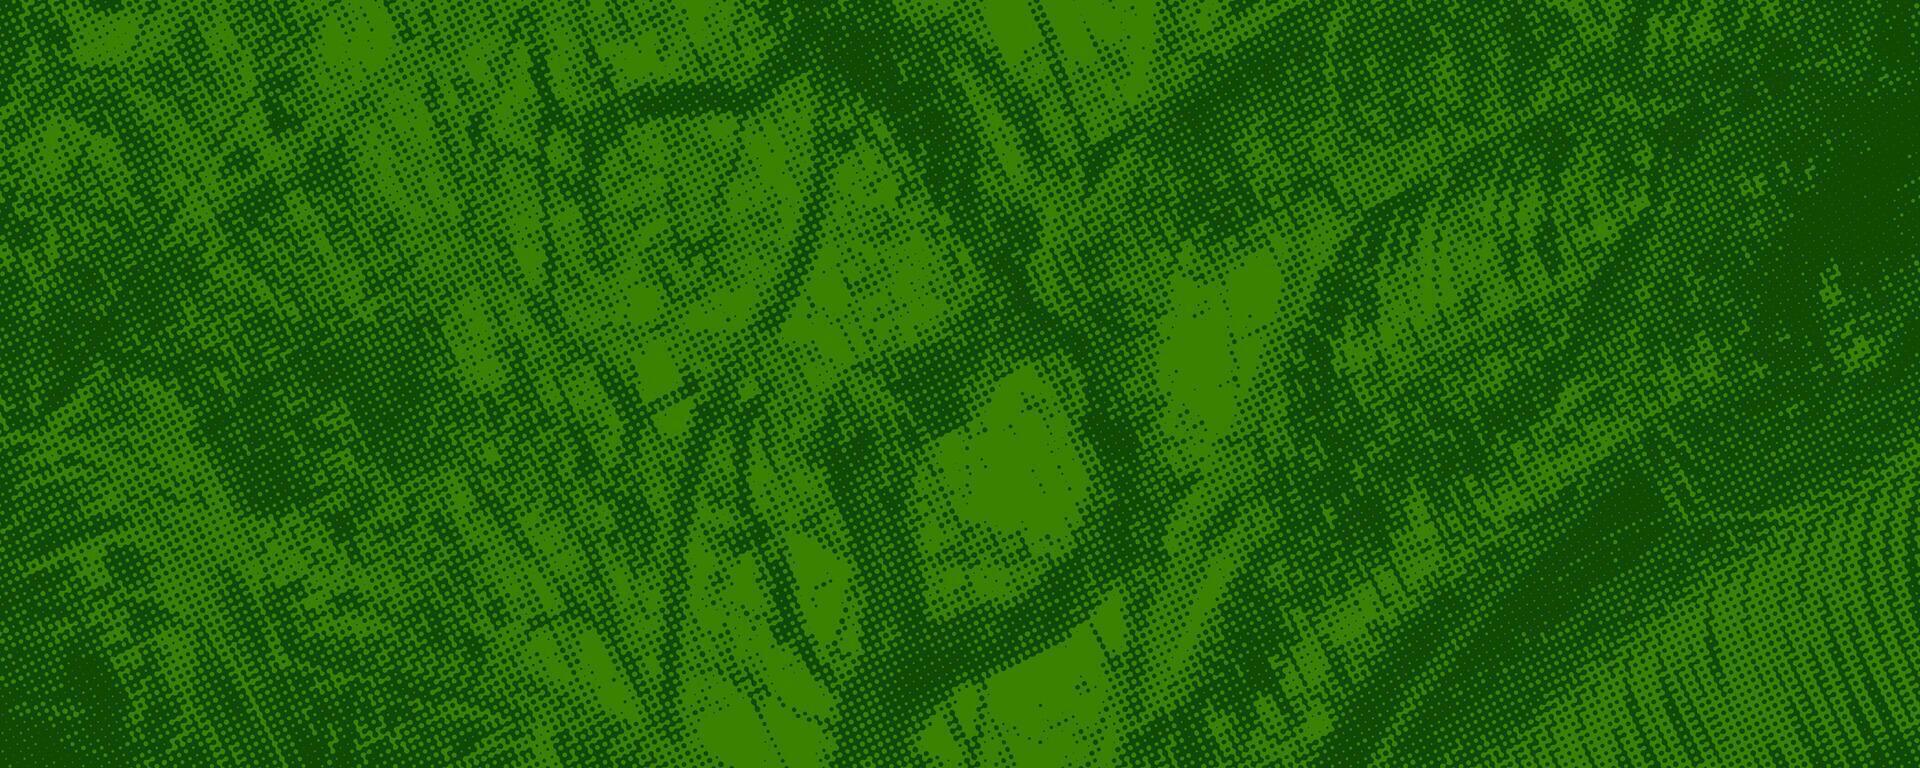 verde foresta astratto sfondo con grunge effetto. vettore illustrazione per il tuo design